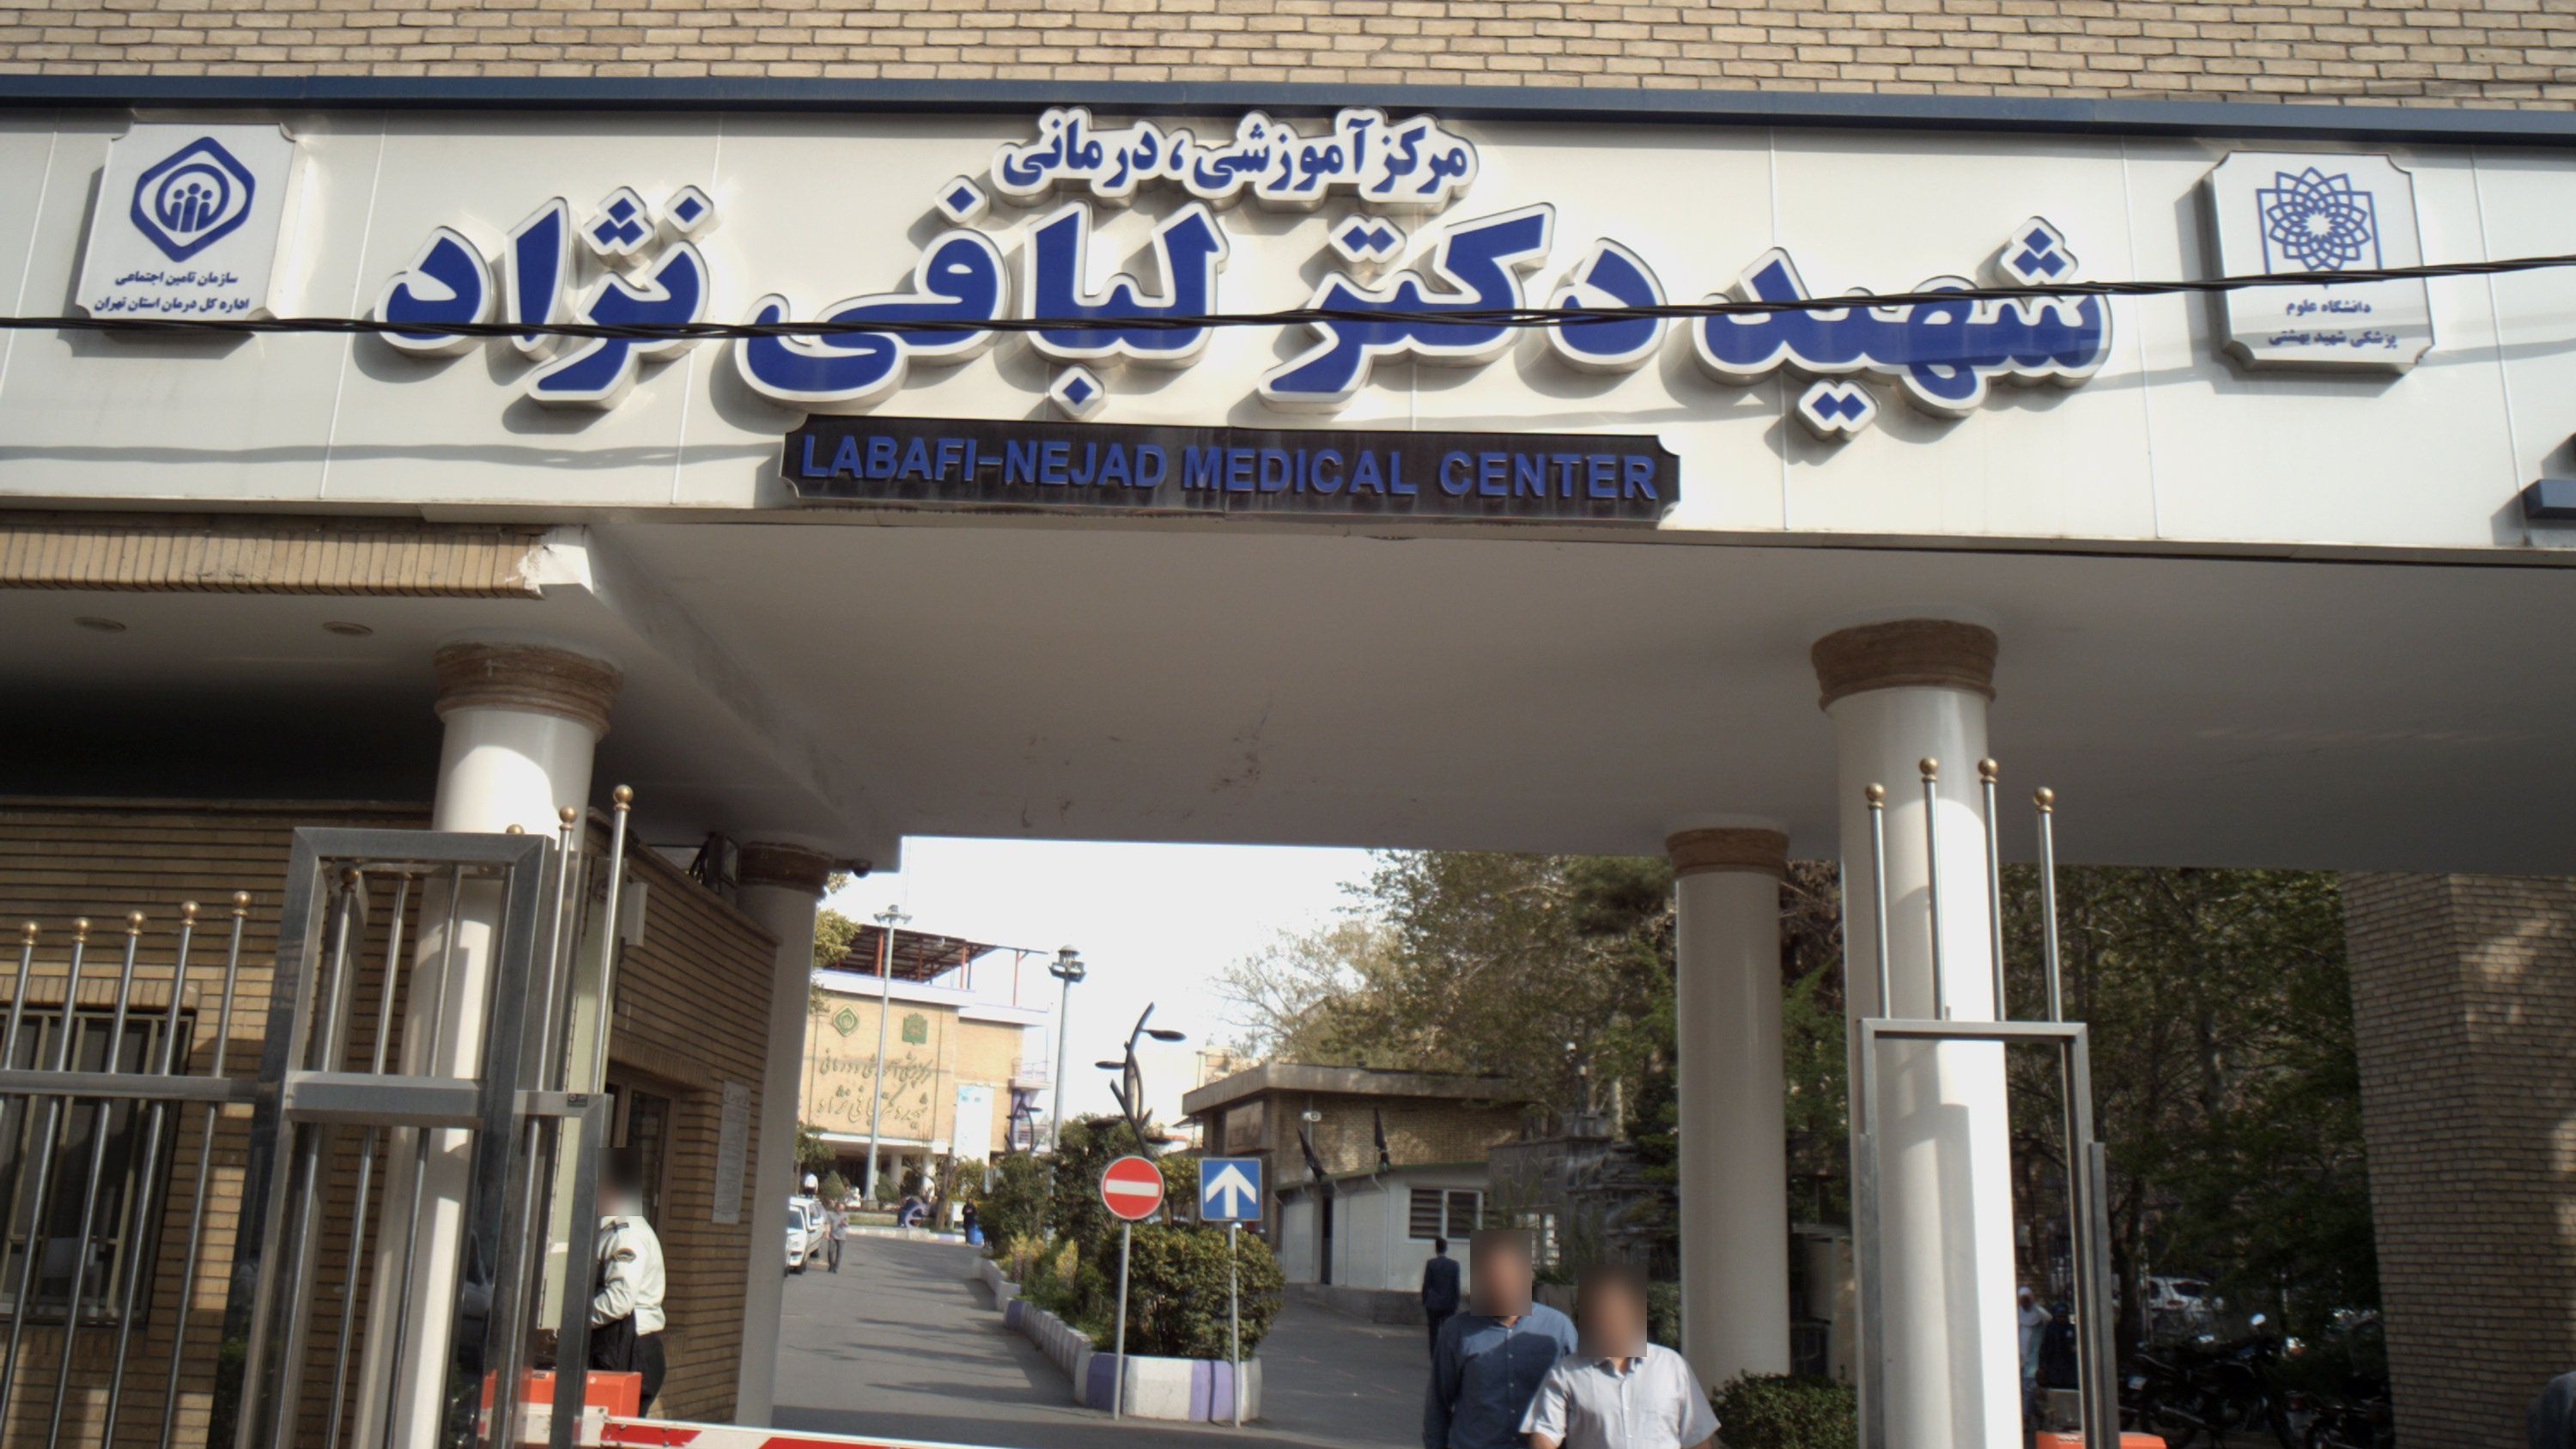 مرکز آموزشی درمانی شهید دکتر لبافی نژاد